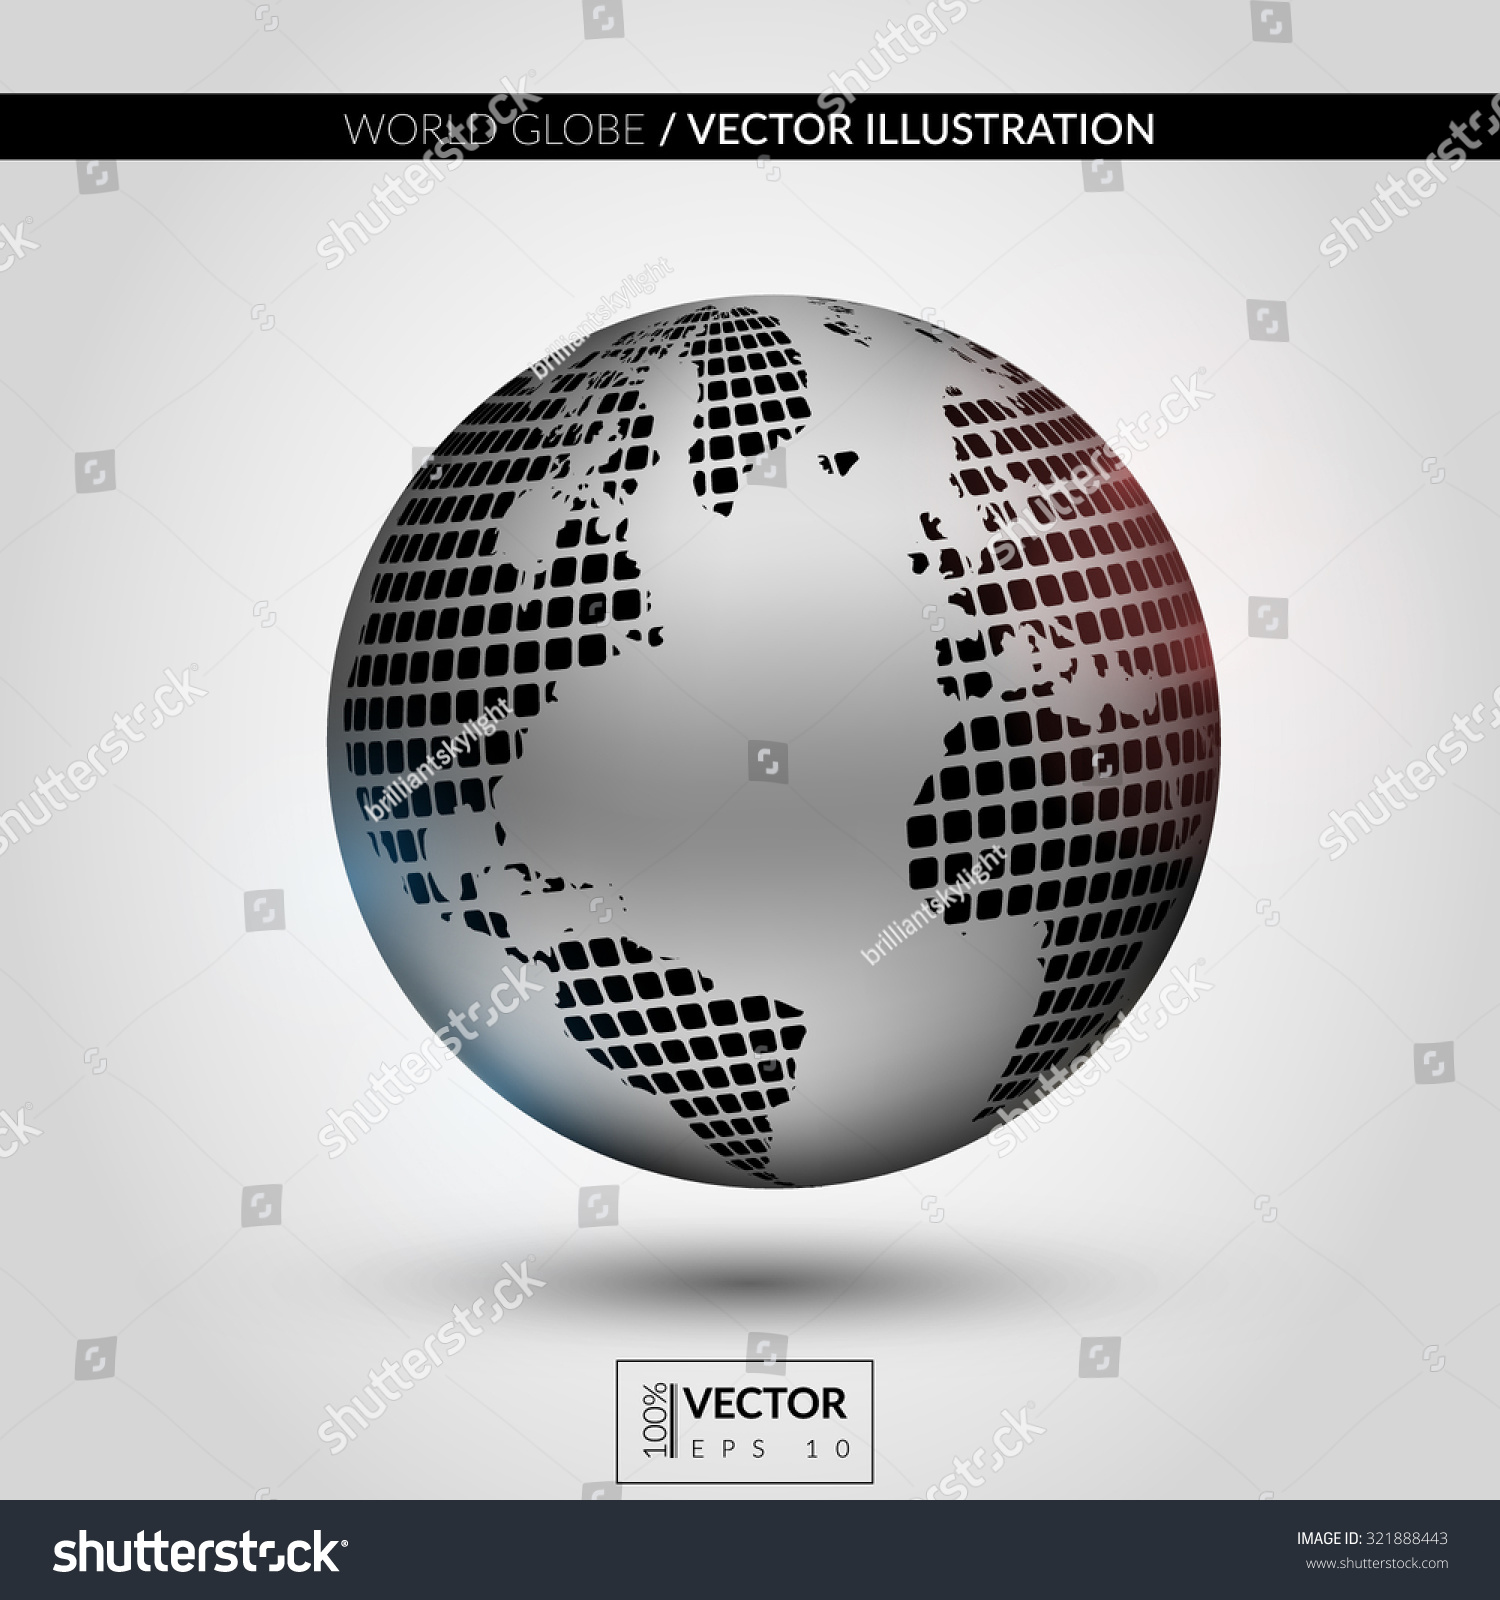 Modern Metallic World Globe Vector Illustration Stock Photo (Photo ...